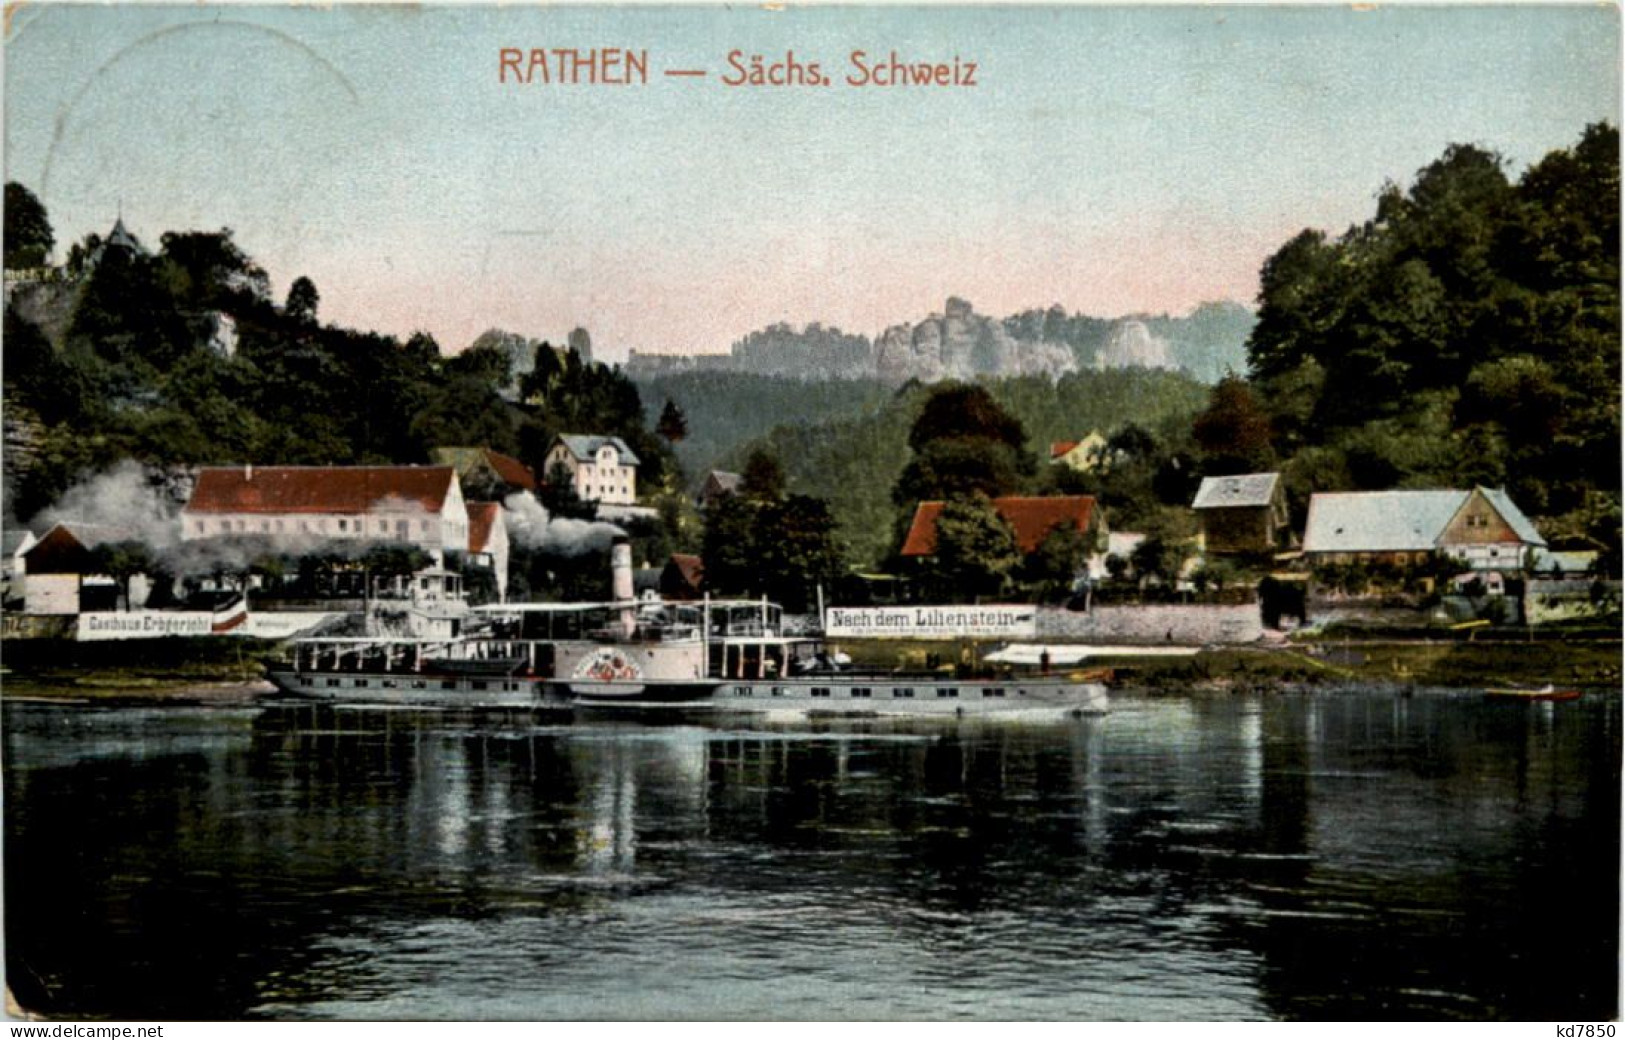 Rathen, Sächs. Schweiz, - Rathen